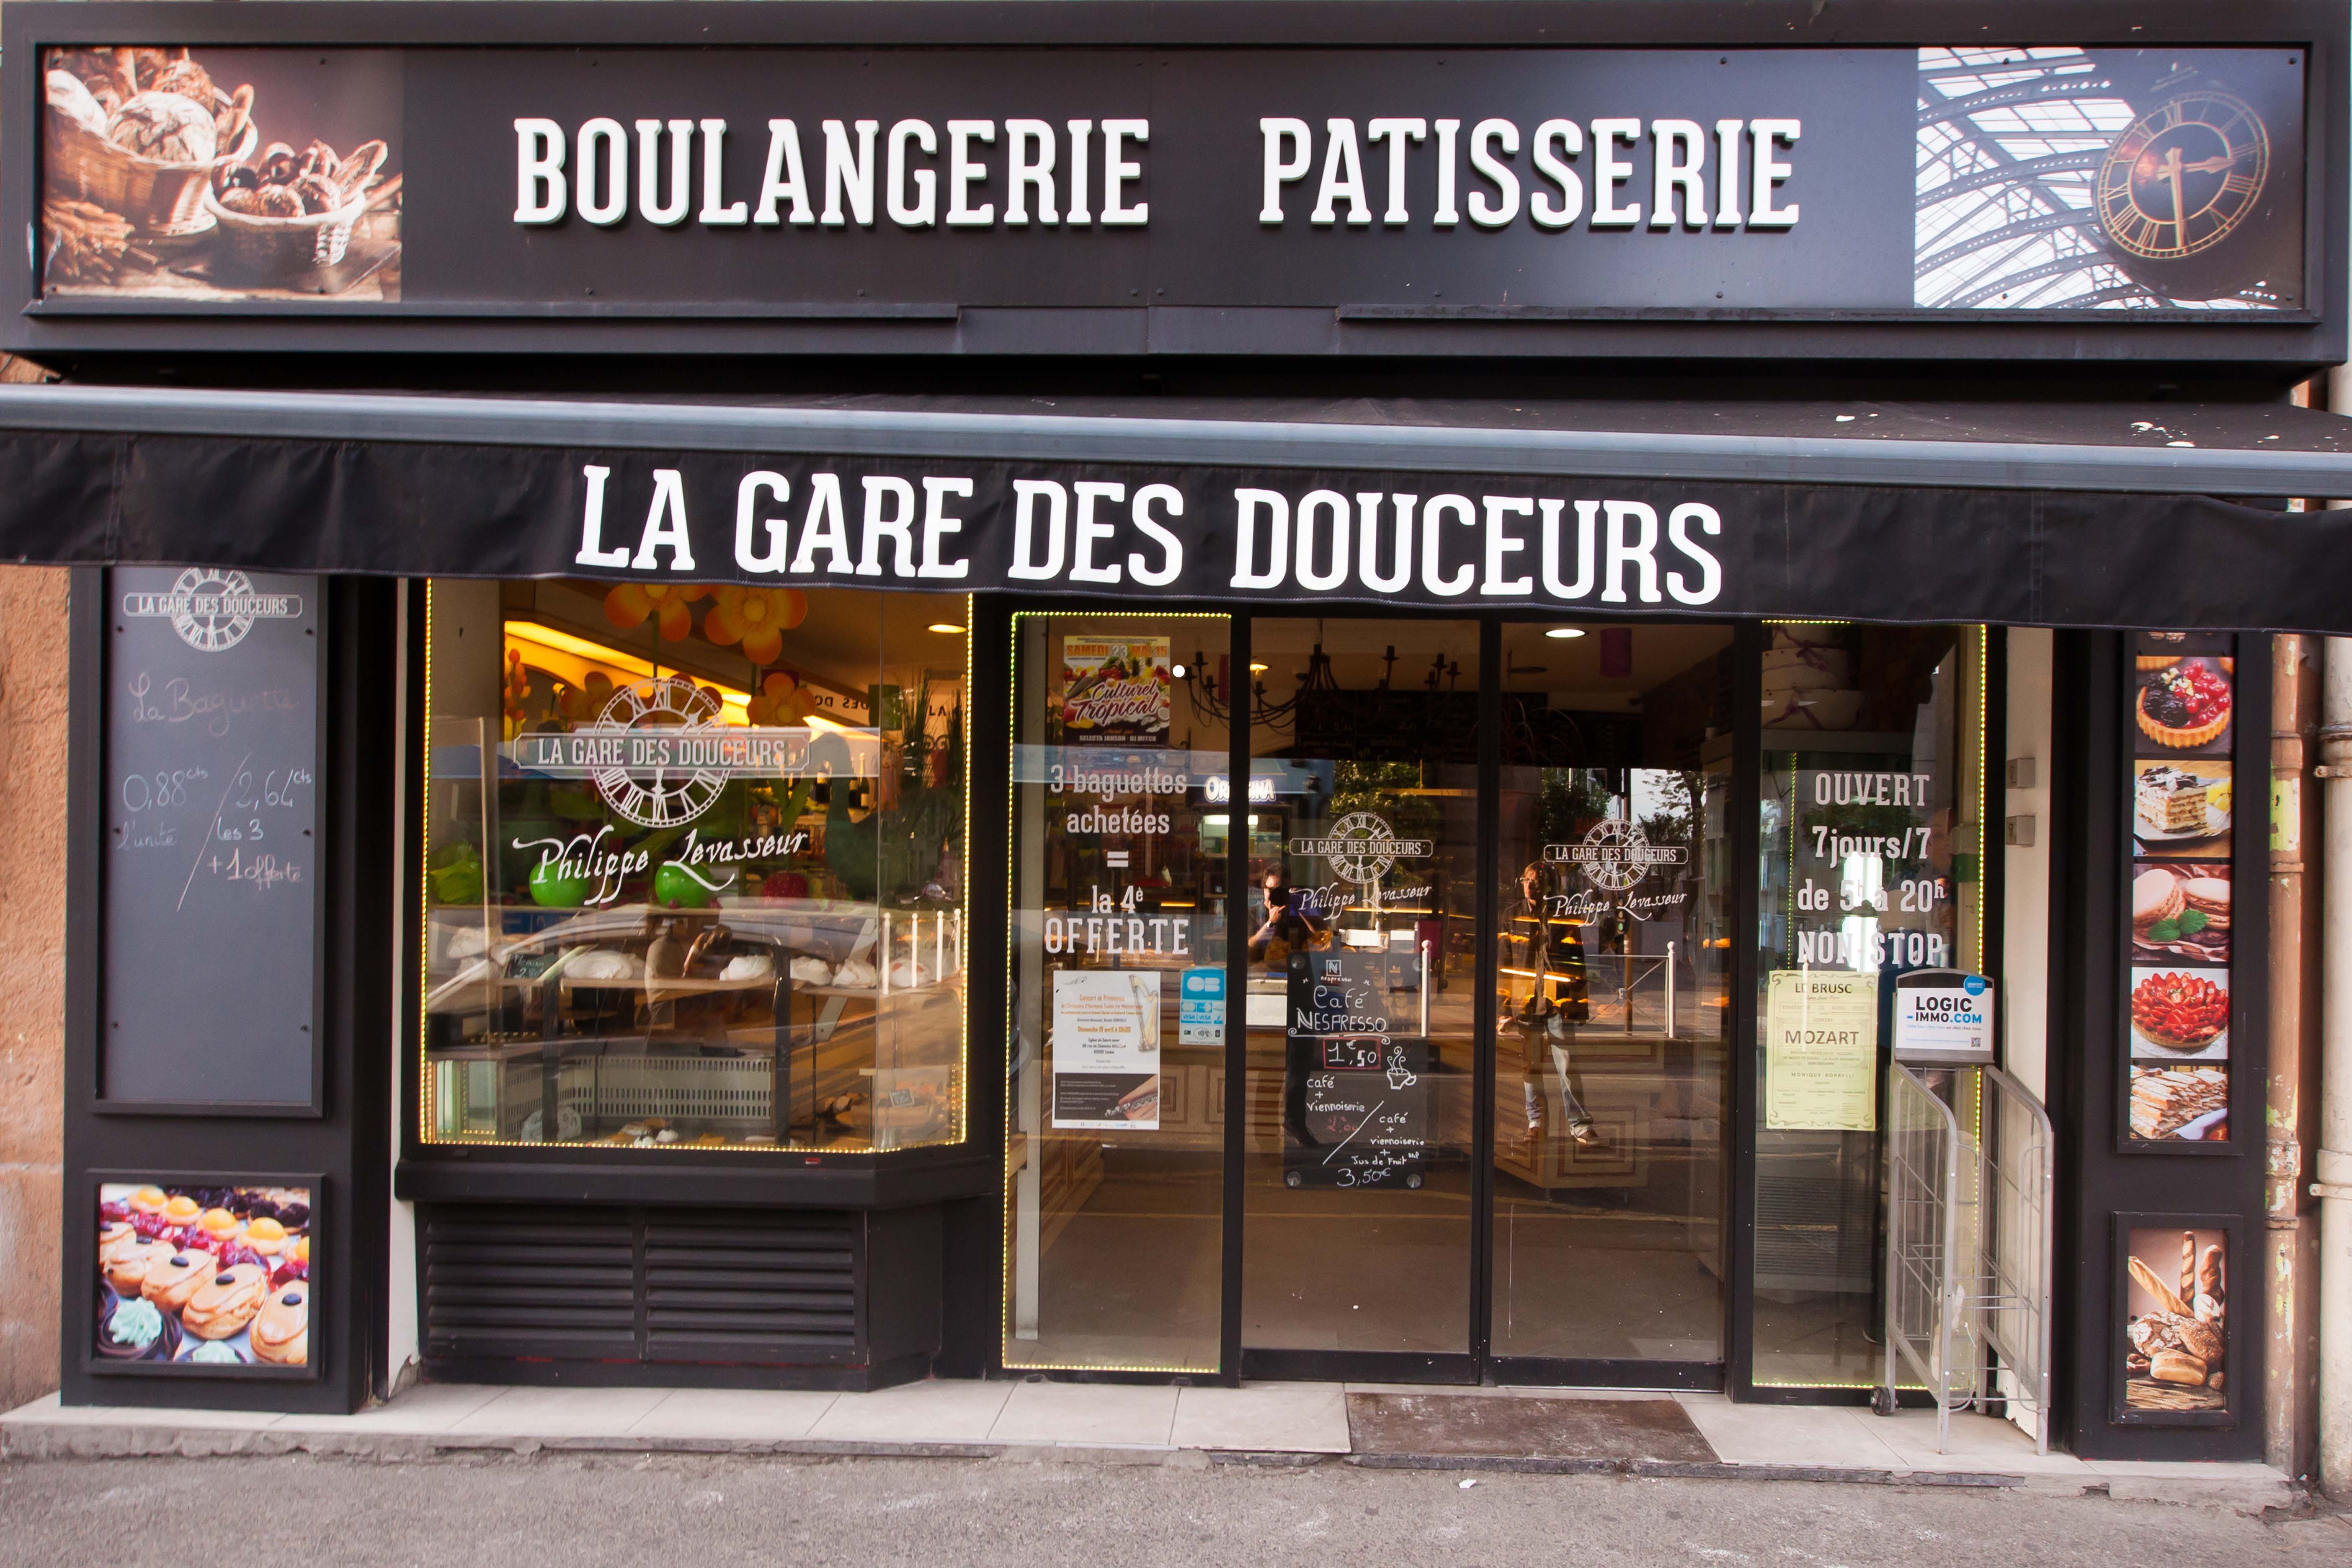 Boulangerie La Gare des Douceurs